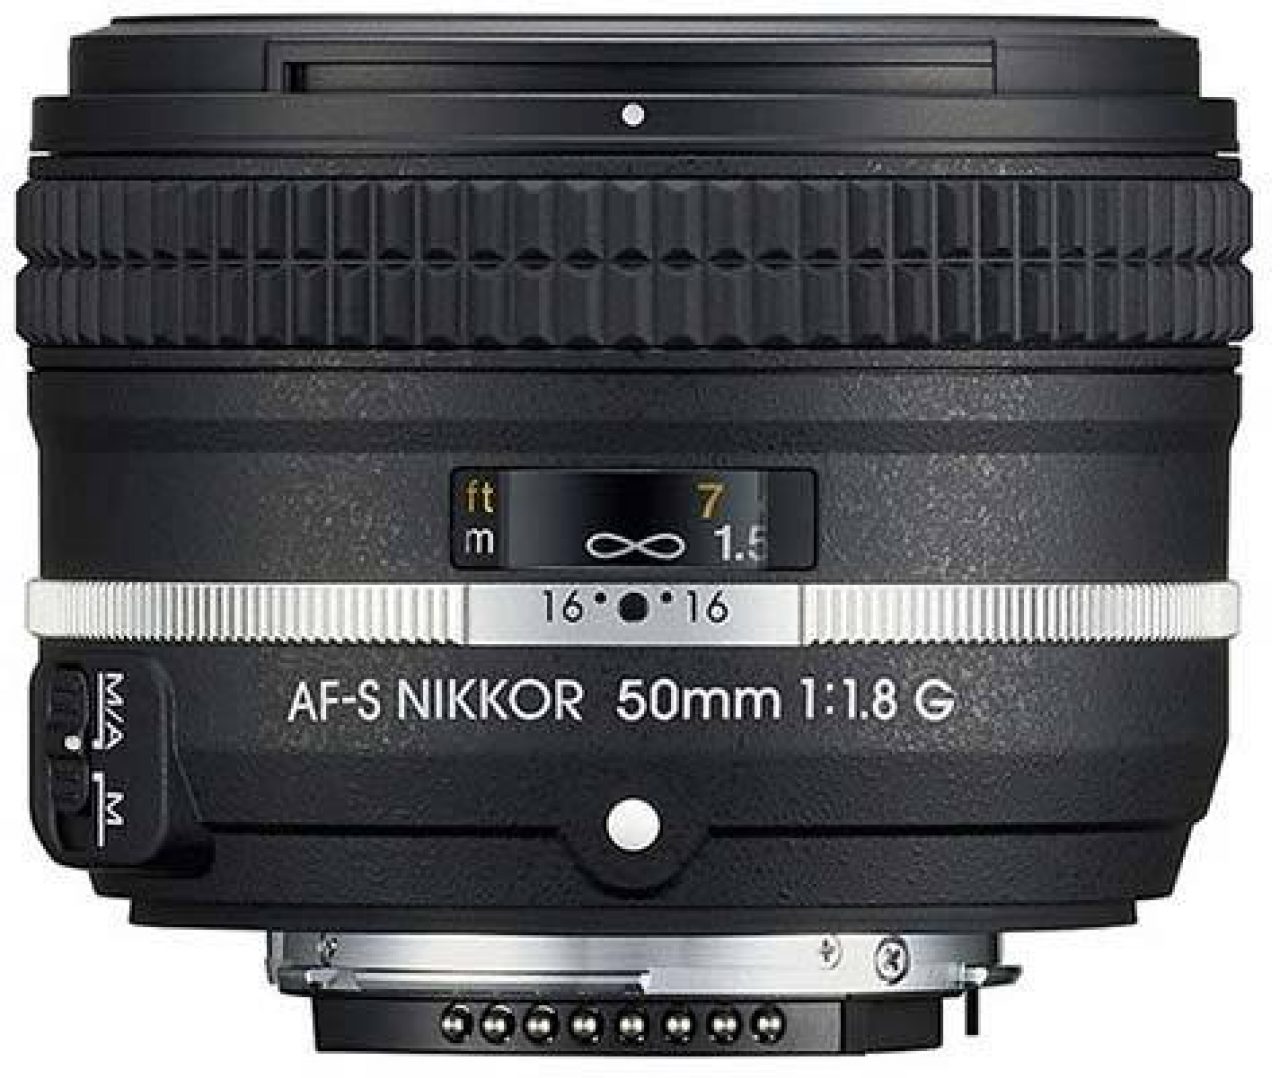 Geruststellen Ik zie je morgen Okkernoot Nikon AF-S Nikkor 50mm f/1.8G (Special Edition) Review | Photography Blog